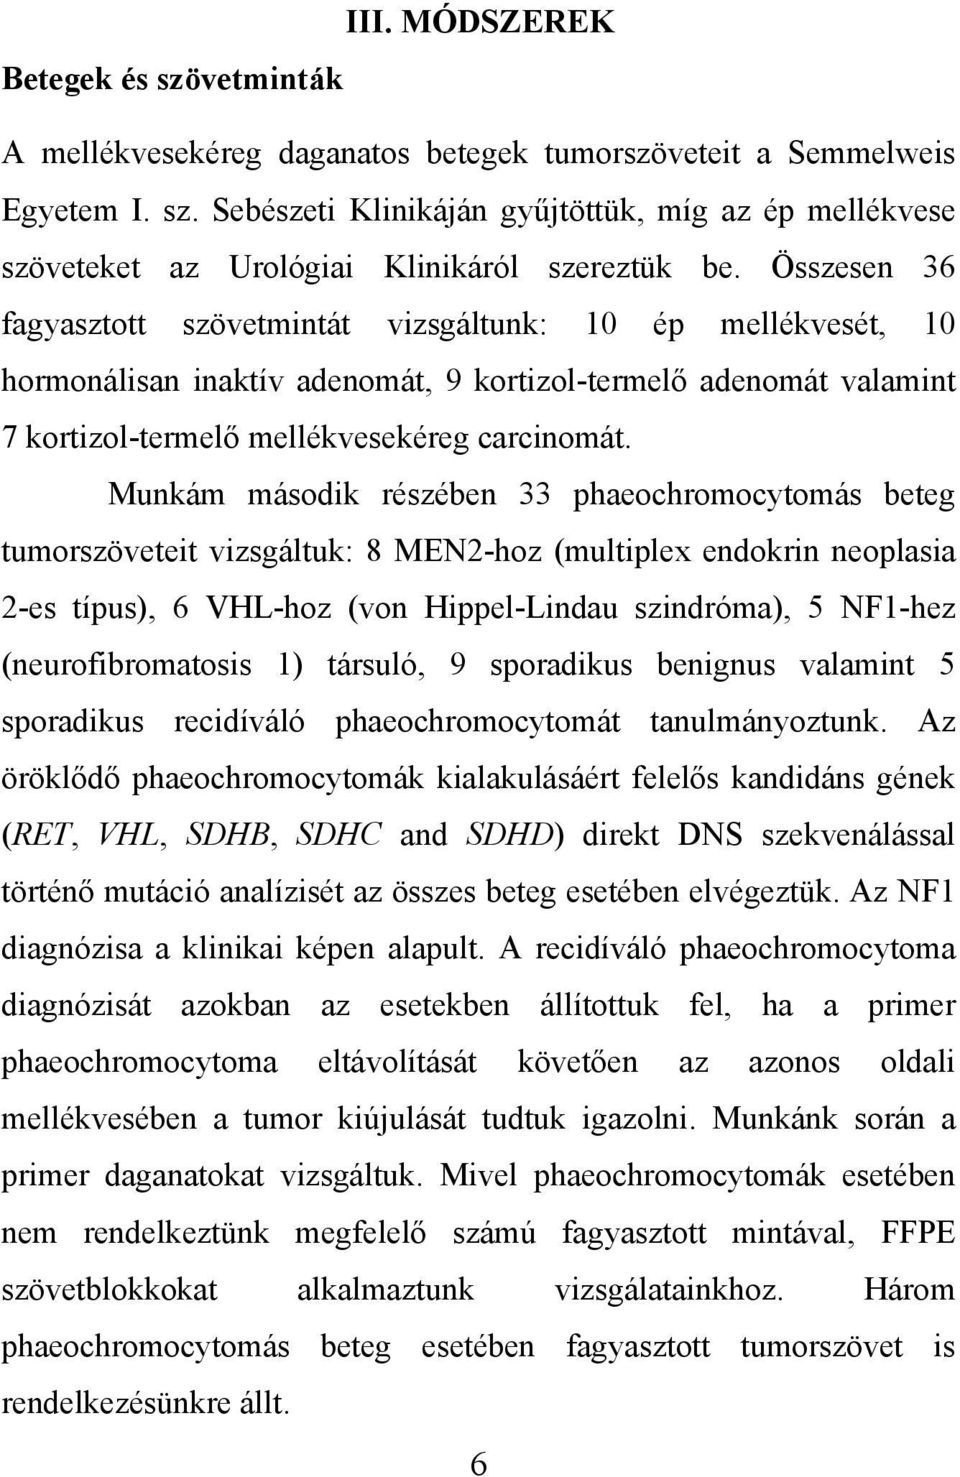 Munkám második részében 33 phaeochromocytomás beteg tumorszöveteit vizsgáltuk: 8 MEN2-hoz (multiplex endokrin neoplasia 2-es típus), 6 VHL-hoz (von Hippel-Lindau szindróma), 5 NF1-hez